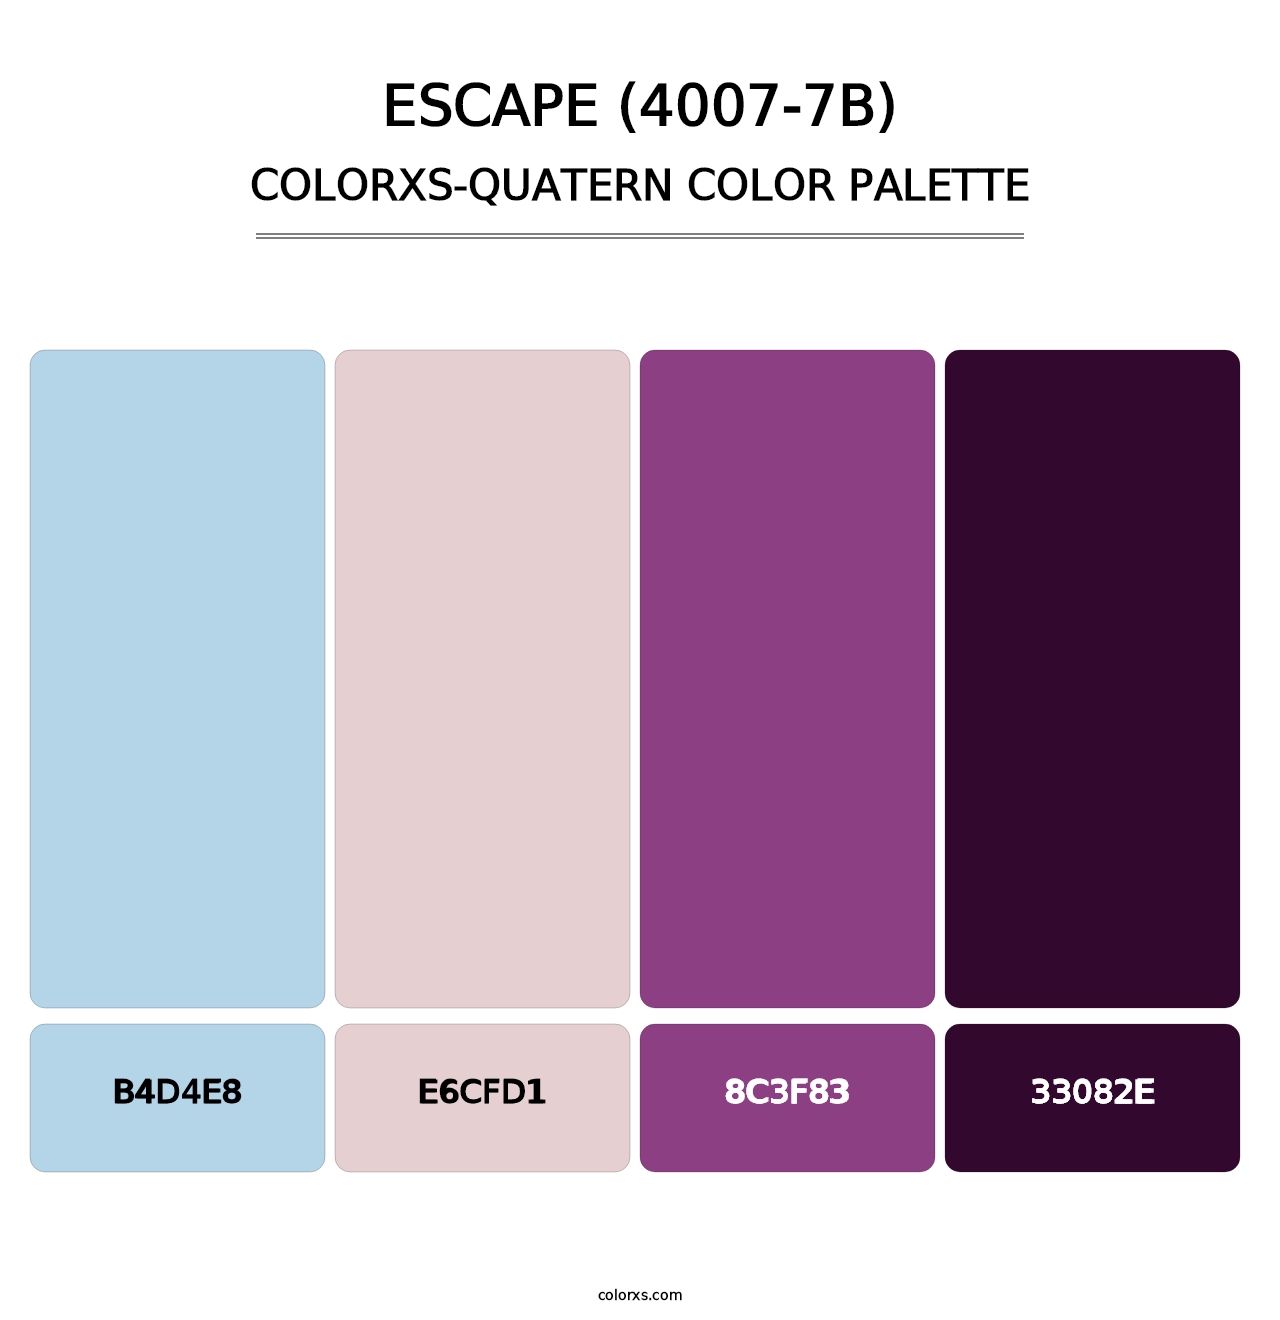 Escape (4007-7B) - Colorxs Quatern Palette